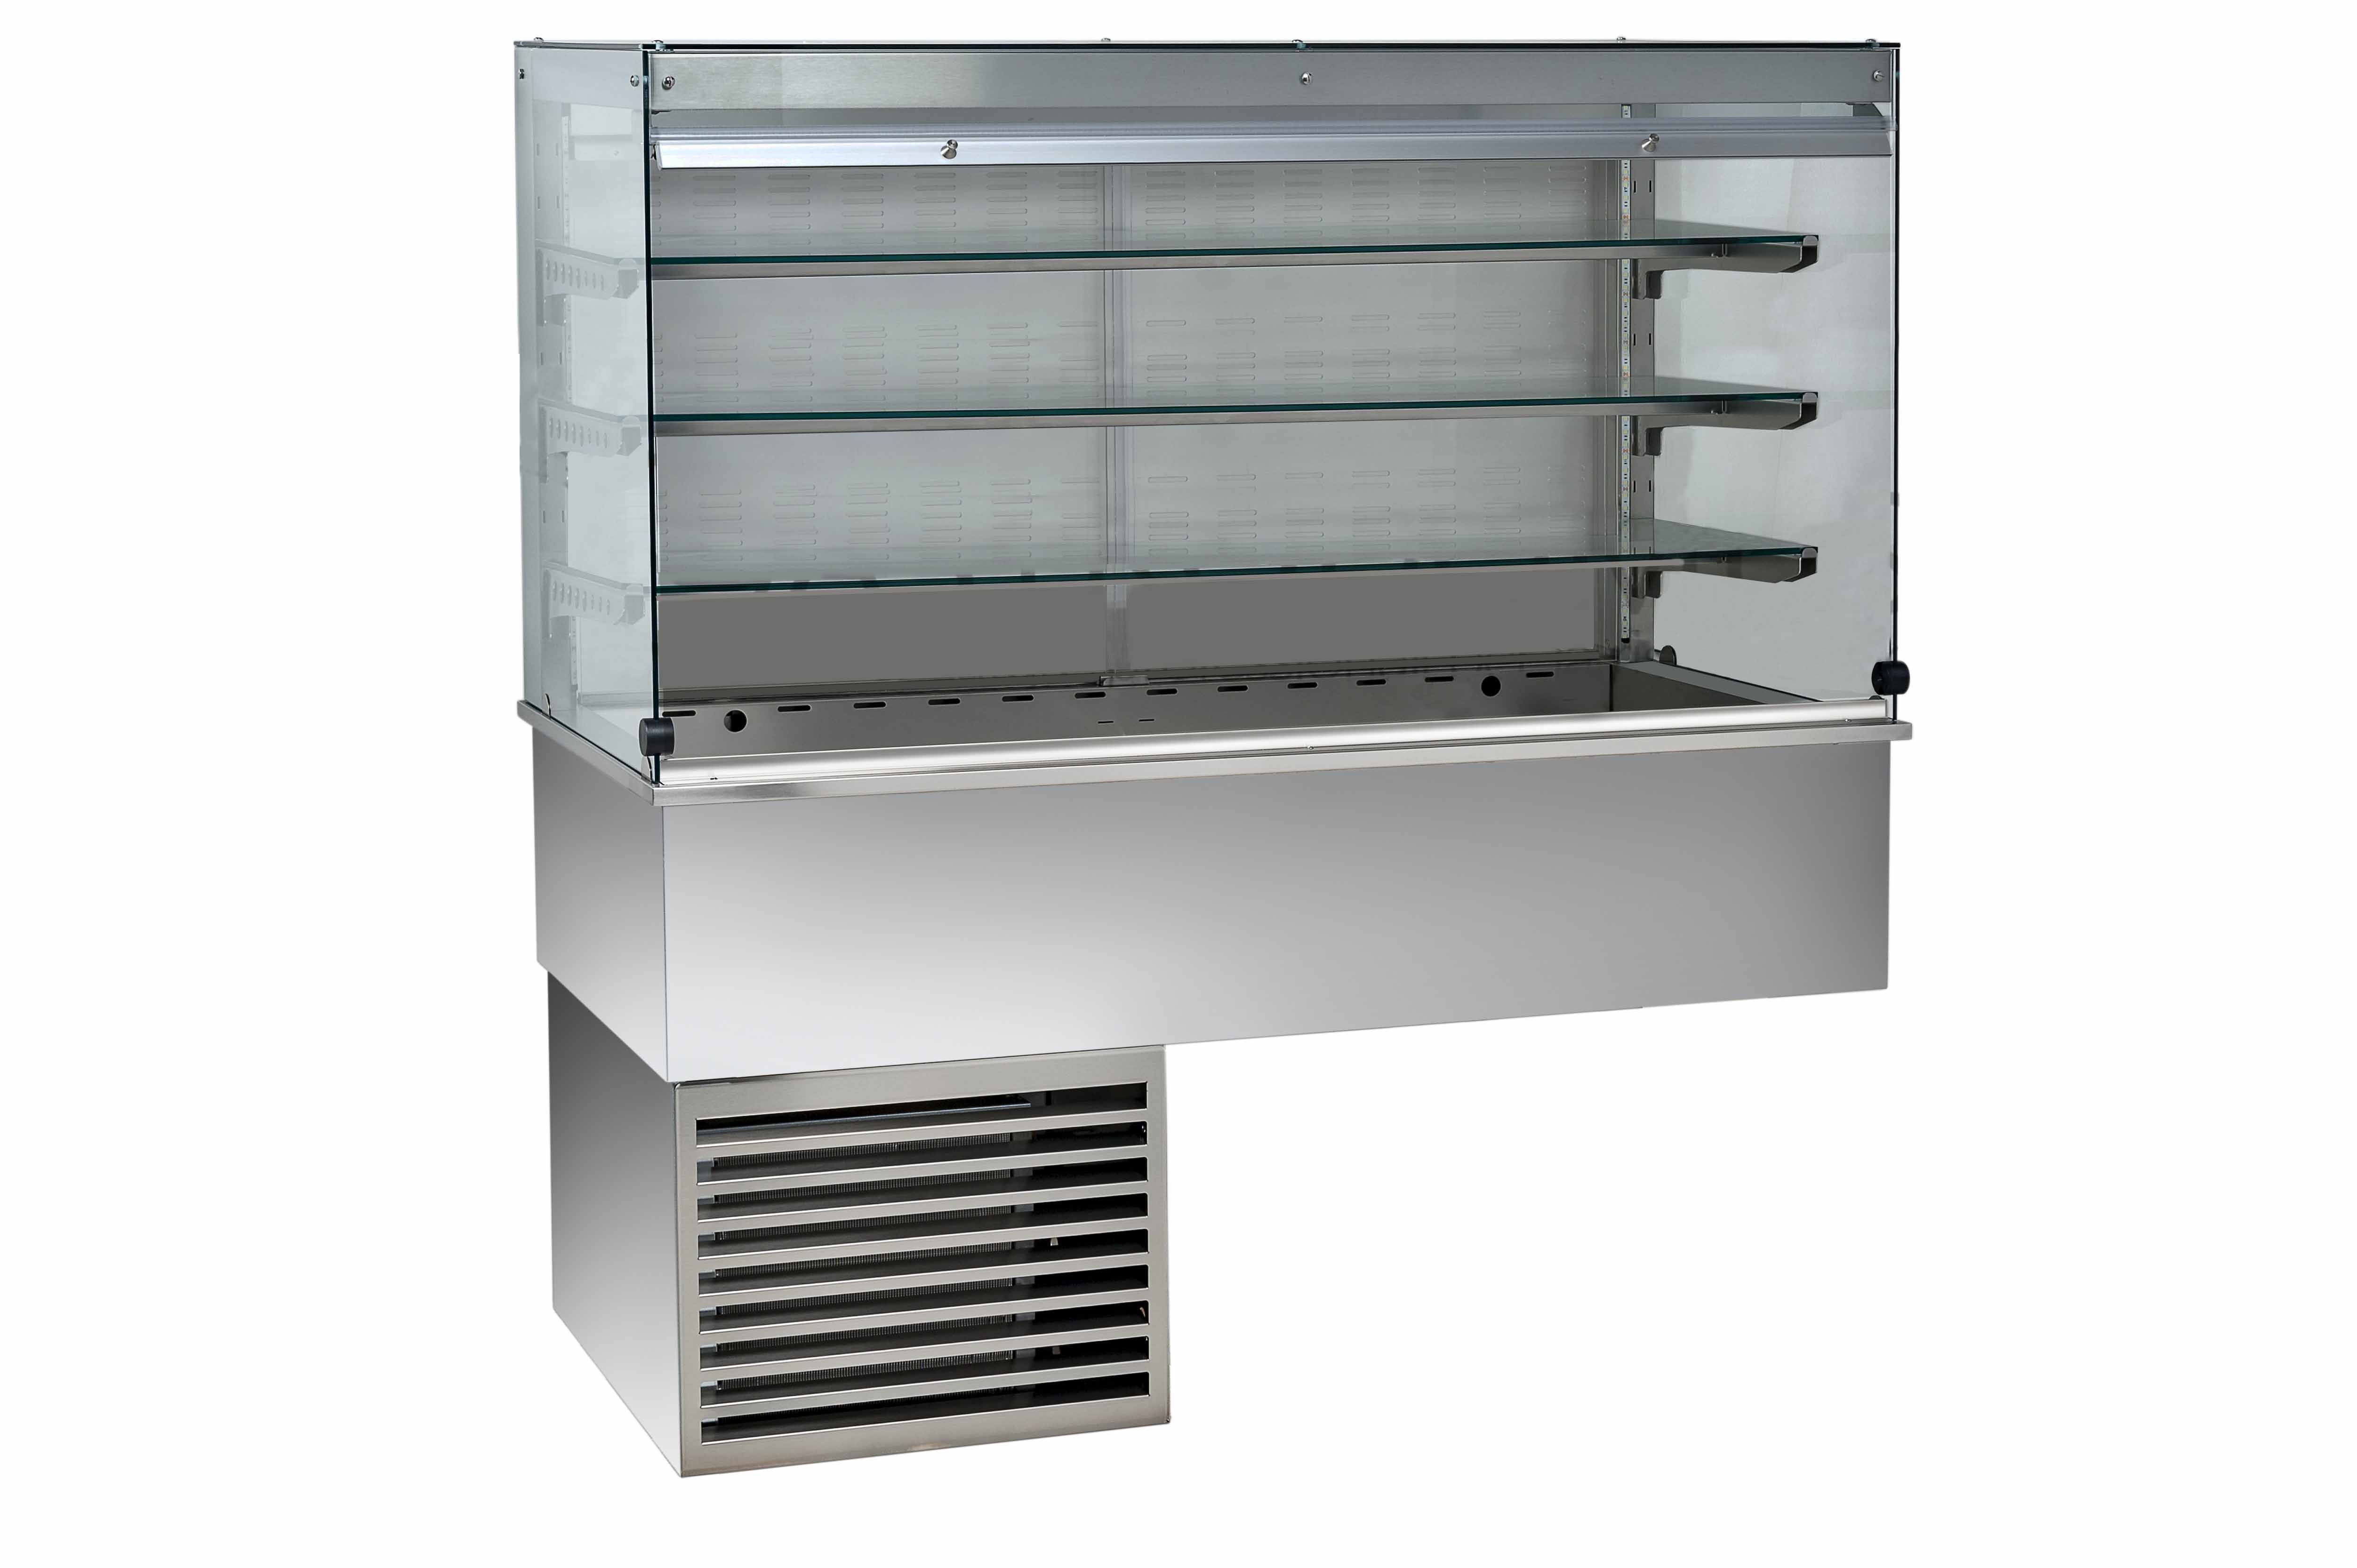 Kühlvitrine – Umluftkühlung – kubisch – 3 Ablagen – Kundenseitevorhang – B 810 mm